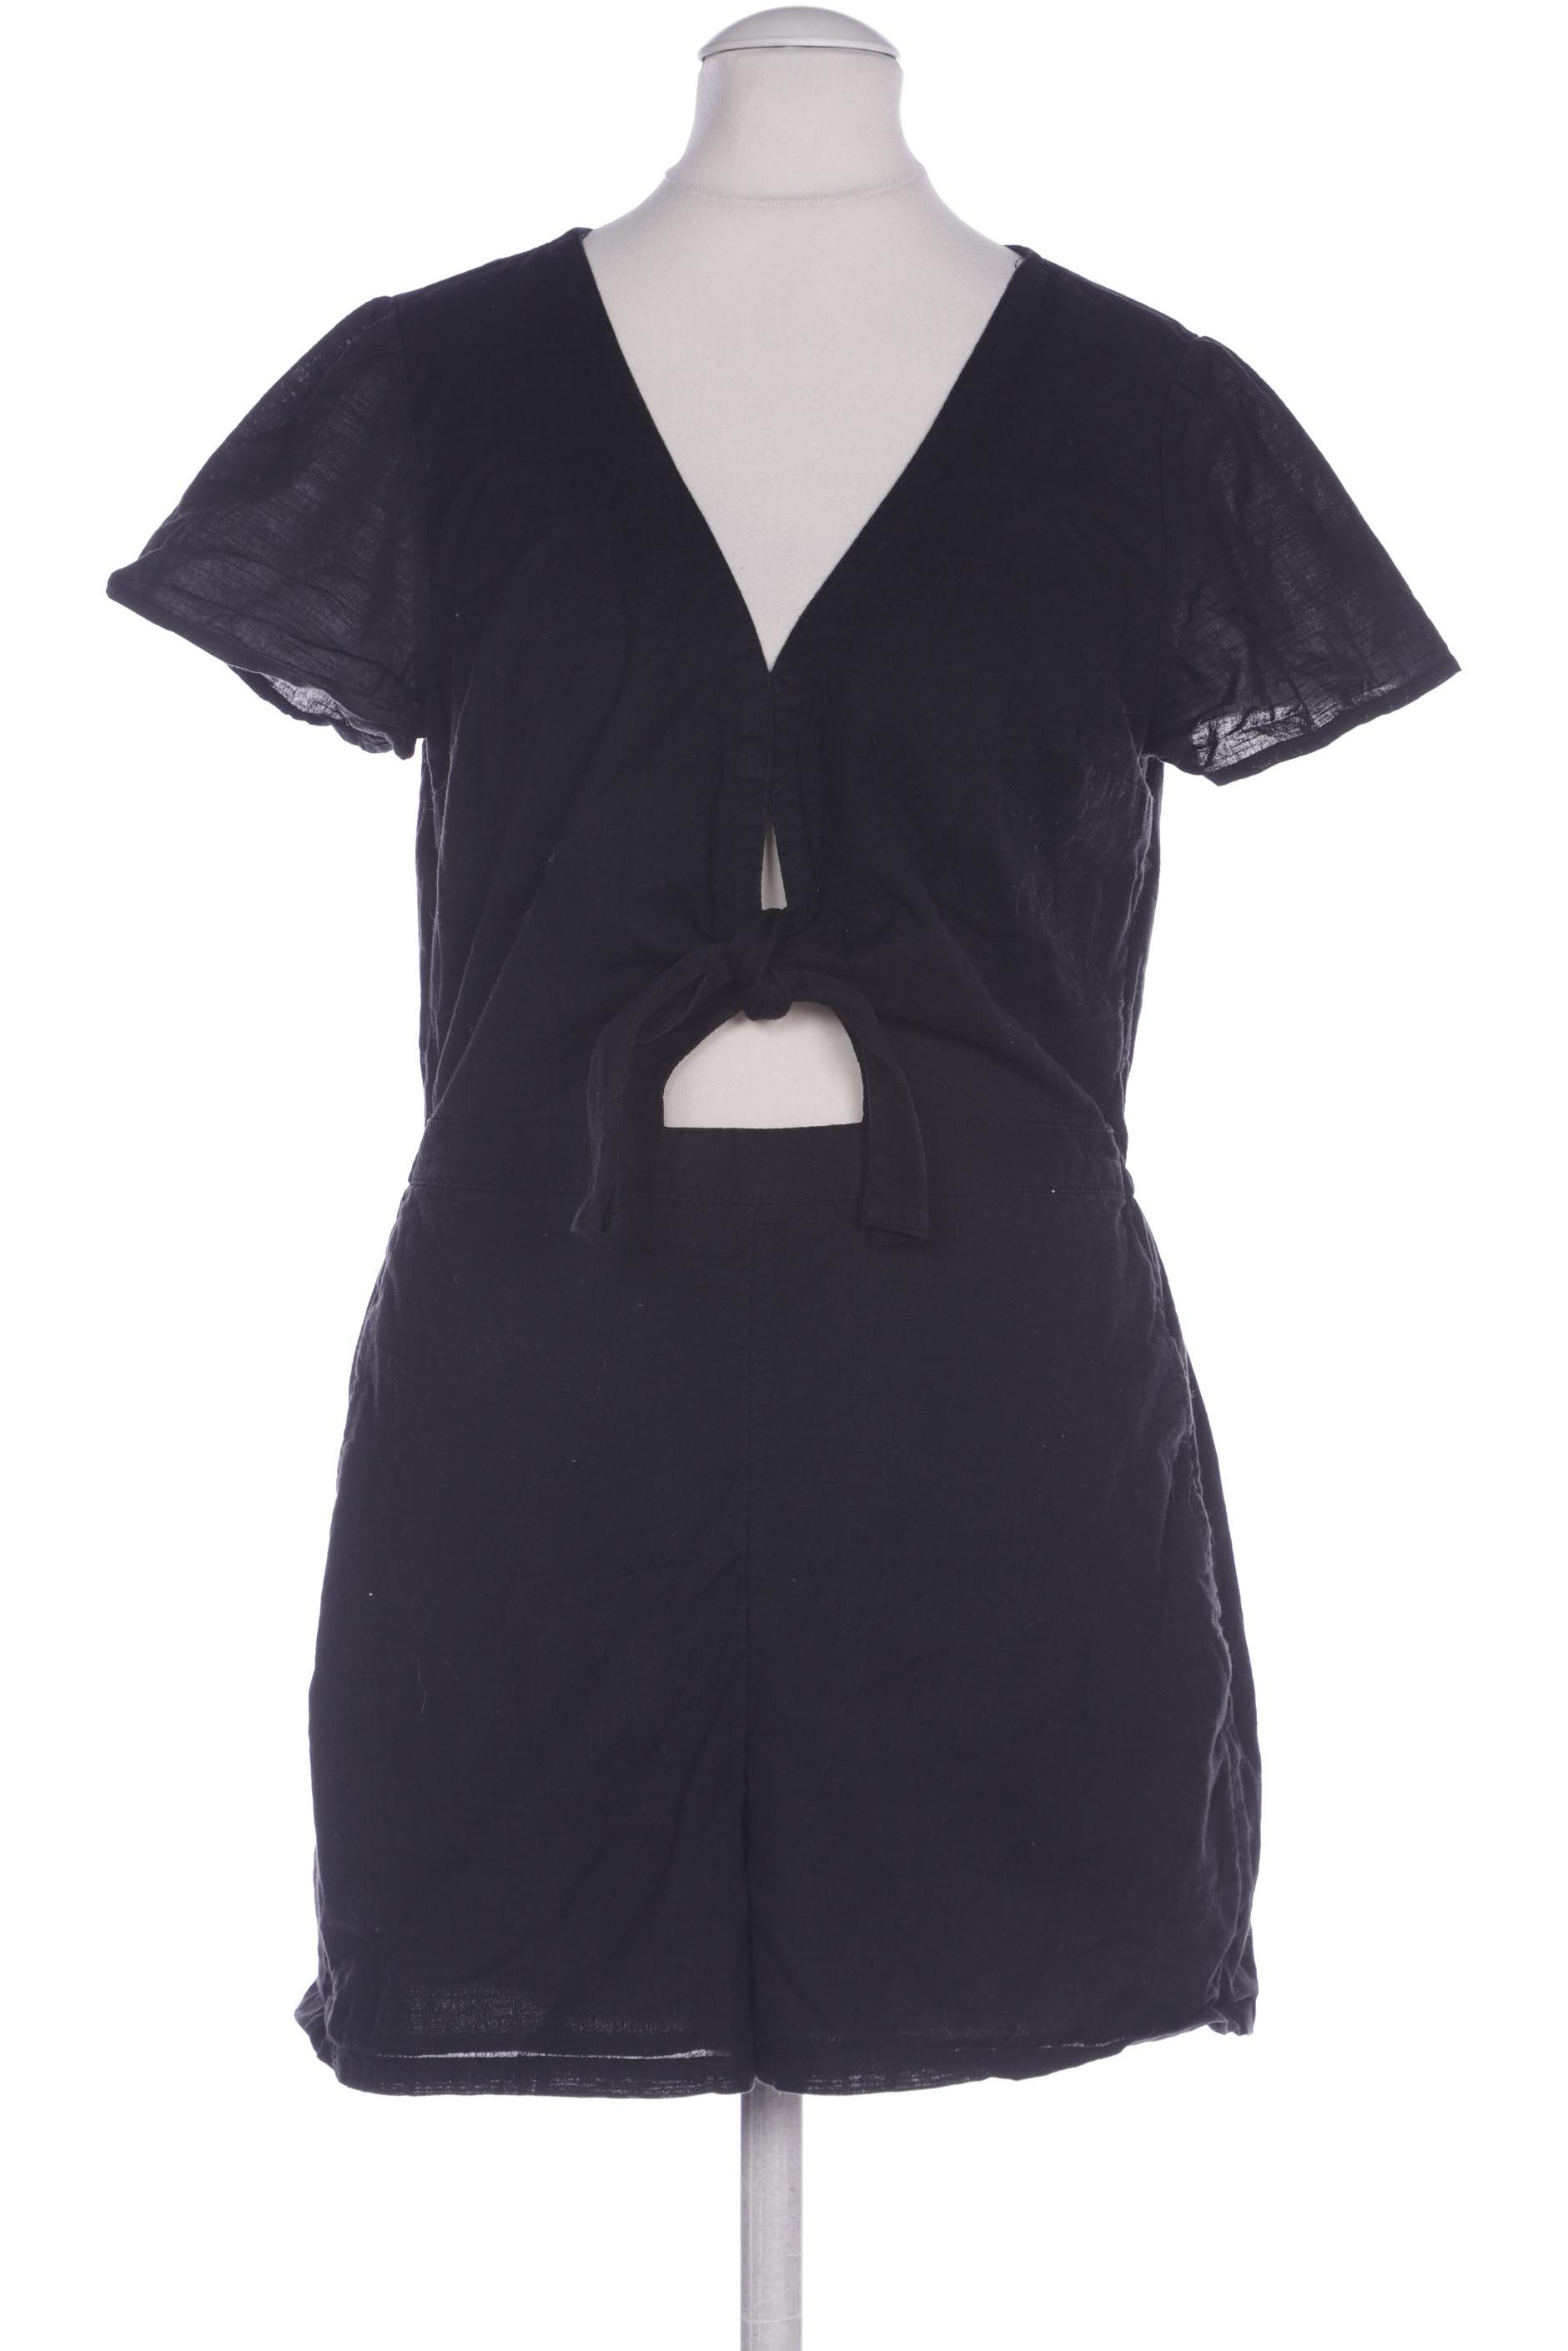 Abercrombie & Fitch Damen Jumpsuit/Overall, schwarz von Abercrombie & Fitch